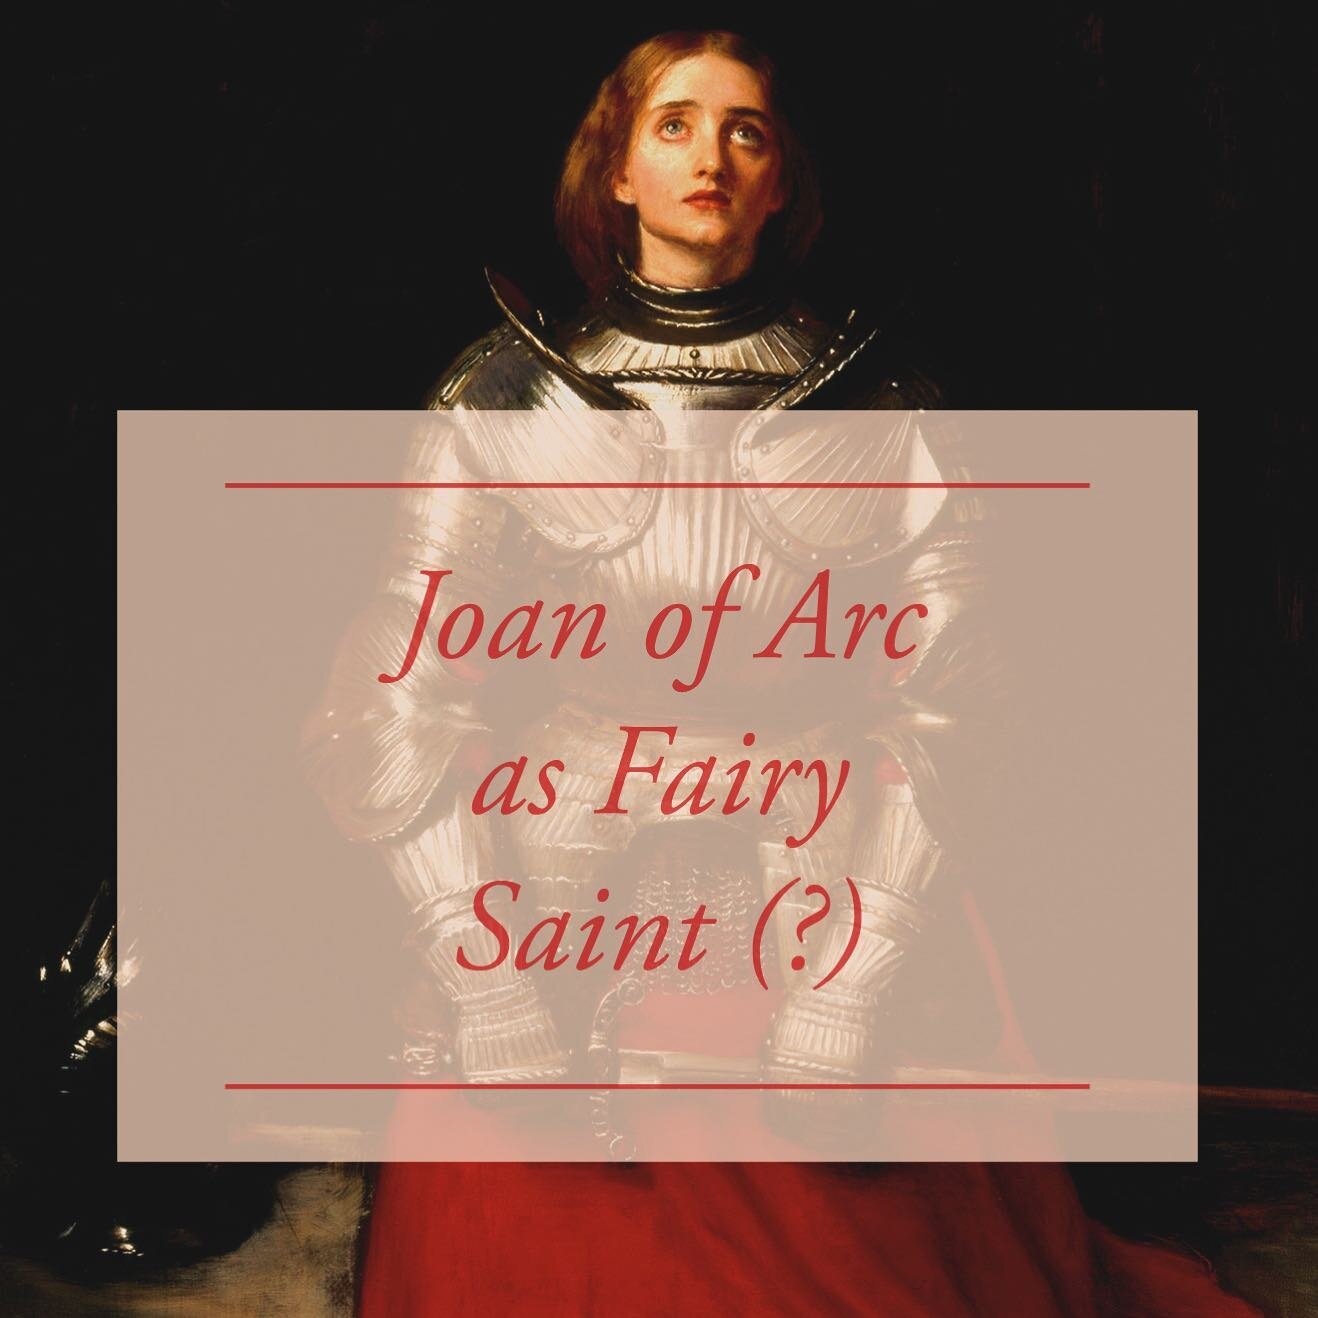 [𝕭𝖑𝖔𝖌 𝕻𝖔𝖘𝖙] Joan of Arc as Fairy Saint (?)

https://www.greenechapel.com/blog/joan-of-arc-as-fairy-saint

📸 John Everett Millais, Joan of Arc, 1865

#greenechapel #greenchapel #sirgawainandthegreenknight #thegreenknight #fairyfaith #traditio